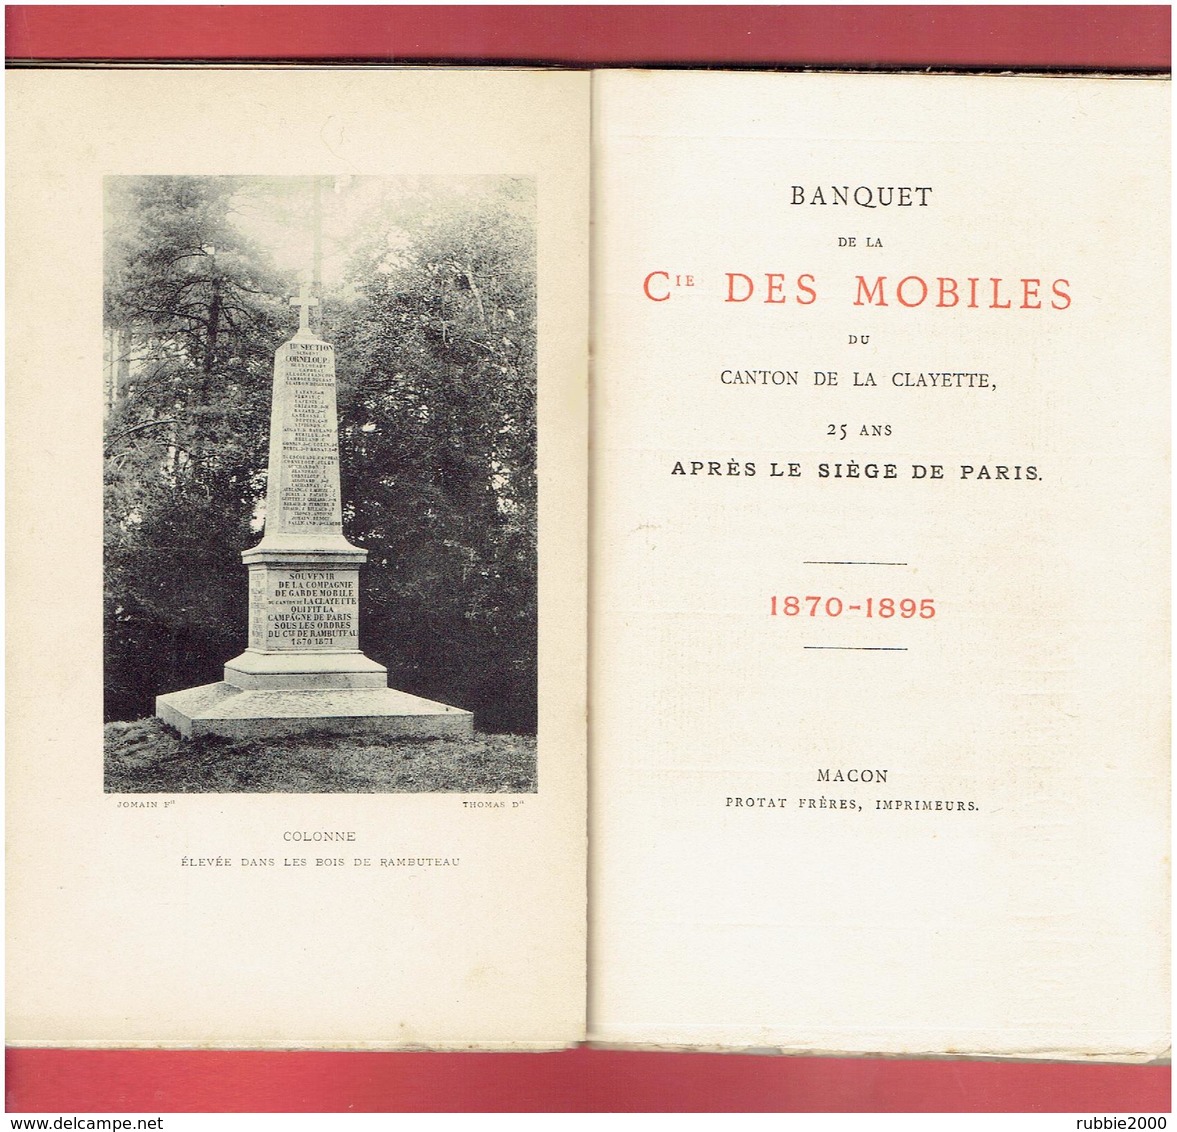 BANQUET DE LA COMPAGNIE DES MOBILES DU CANTON DE LA CLAYETTE AU SIEGE DE PARIS EN 1870 COMTE DE RAMBUTEAU SAONE ET LOIRE - Bourgogne